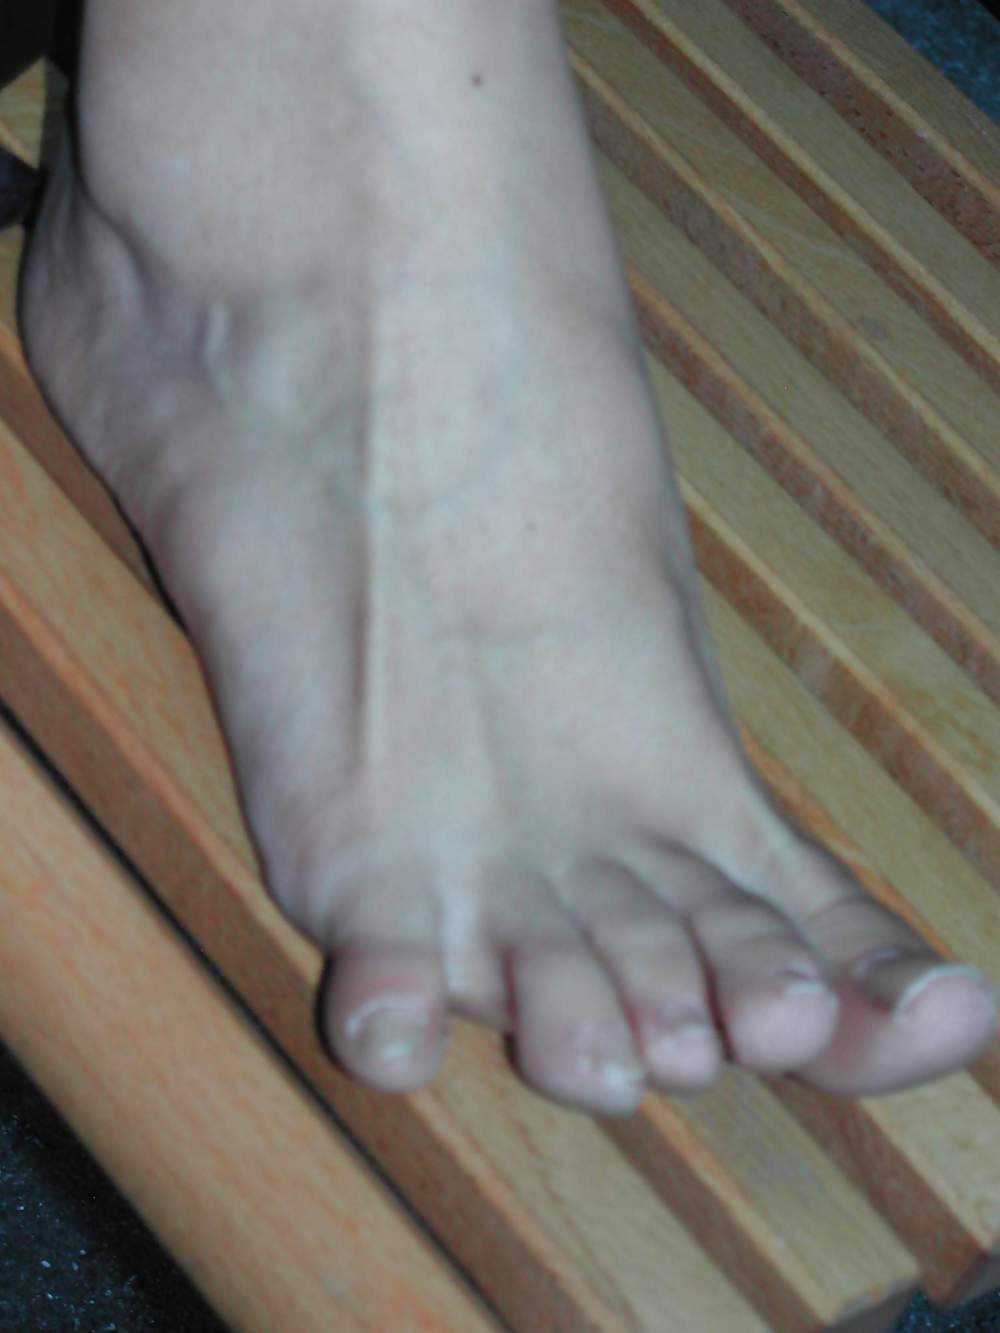 Sex swiss girls feet image